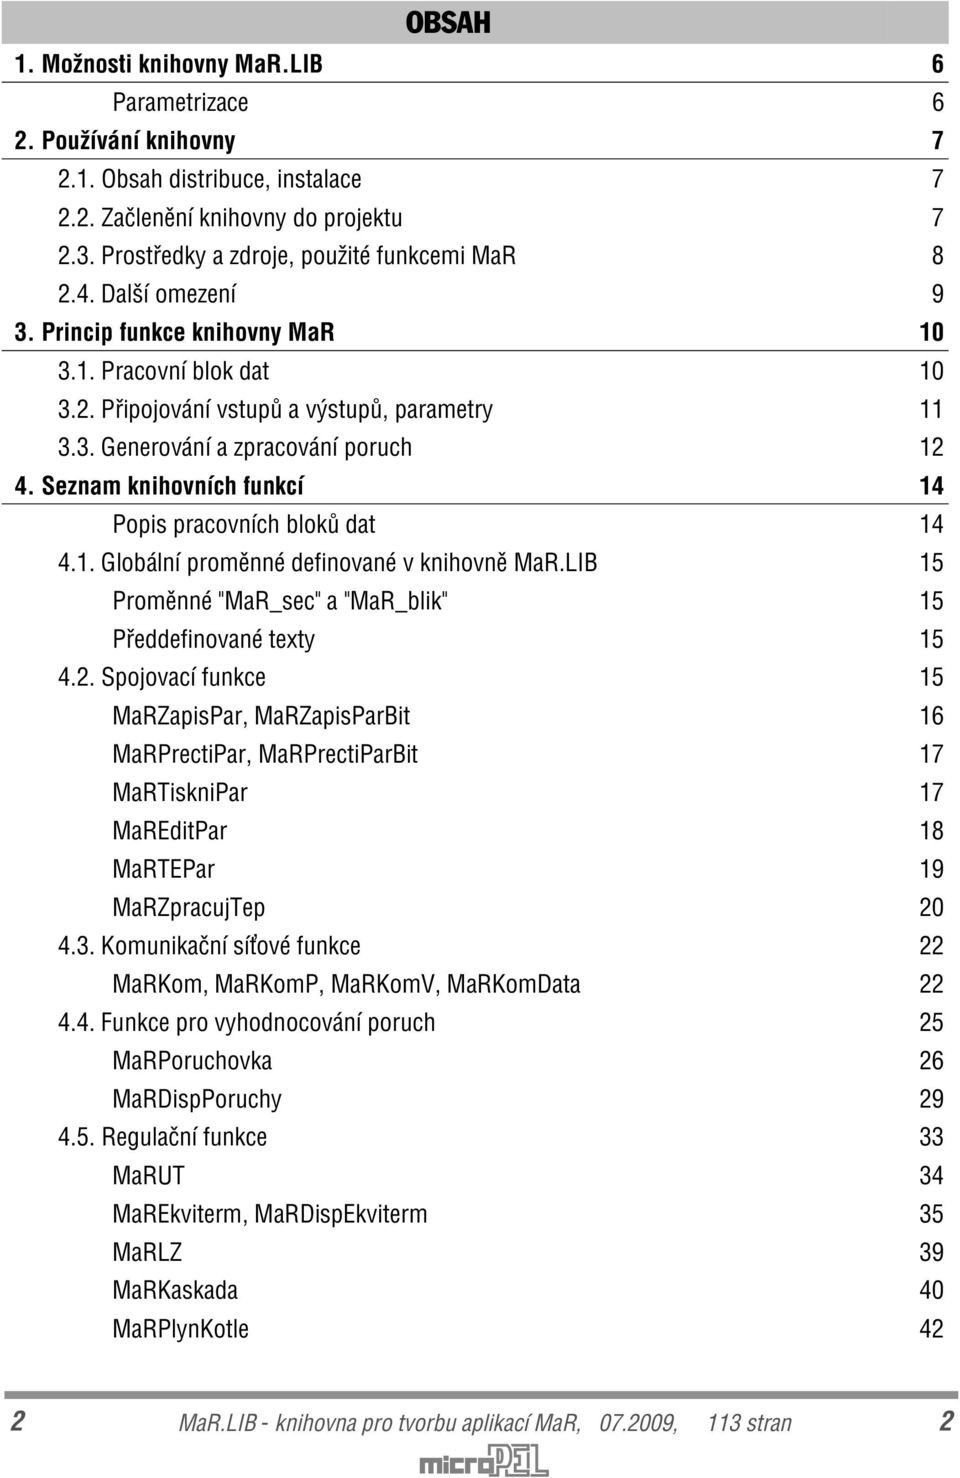 Seznam knihovních funkcí 14 Popis pracovních blokù dat 14 4.1. Globální promìnné definované v knihovnì MaR.LIB 15 Promìnné "MaR_sec" a "MaR_blik" 15 Pøeddefinované texty 15 4.2.